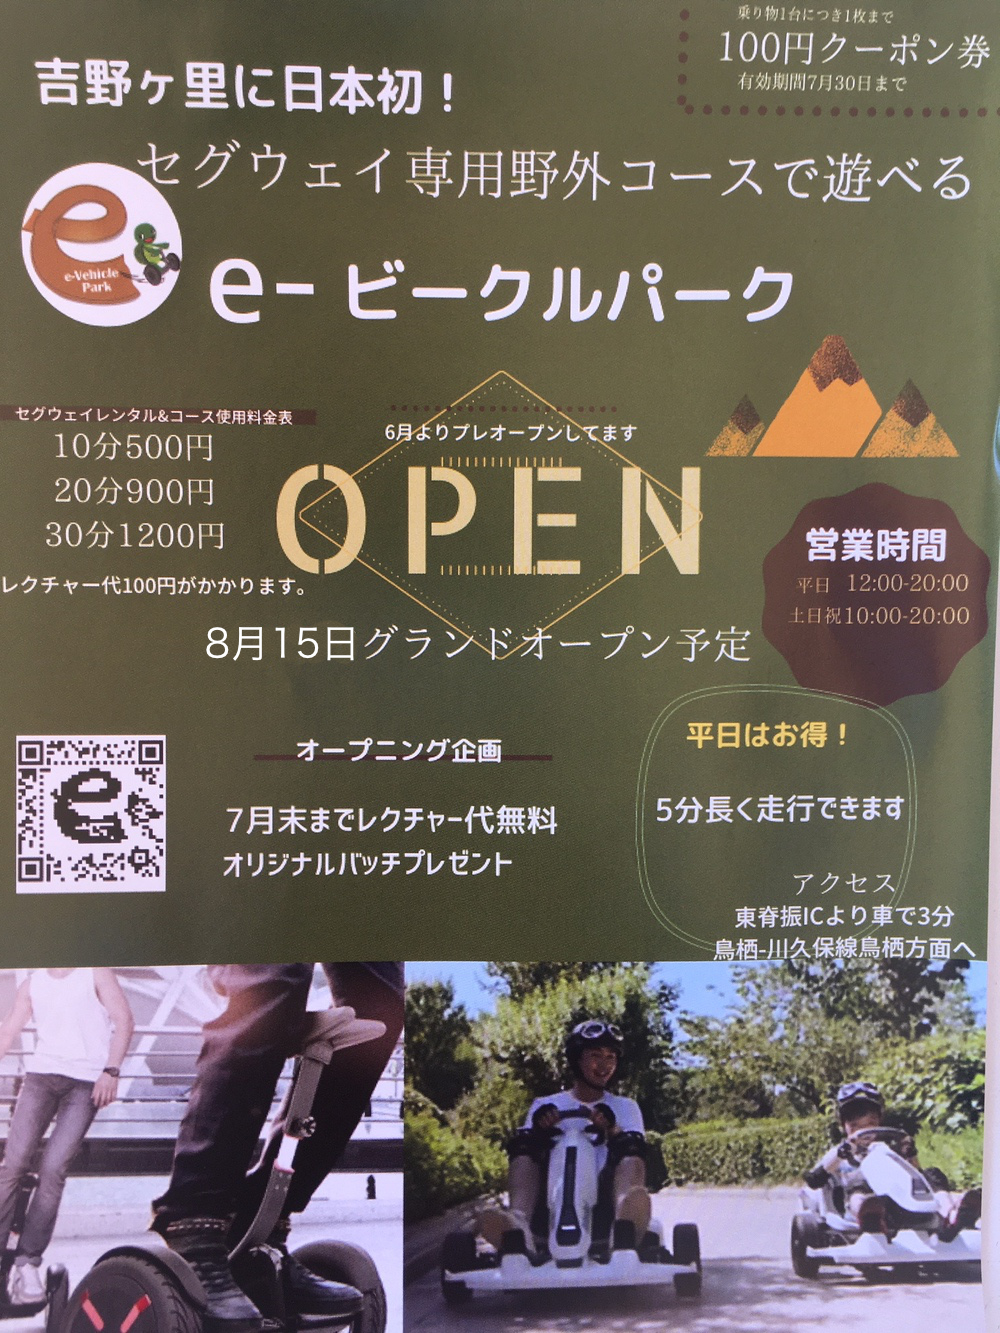 e-ビークルパーク 吉野ヶ里町にオープン！大人も子供も楽しめる野外施設